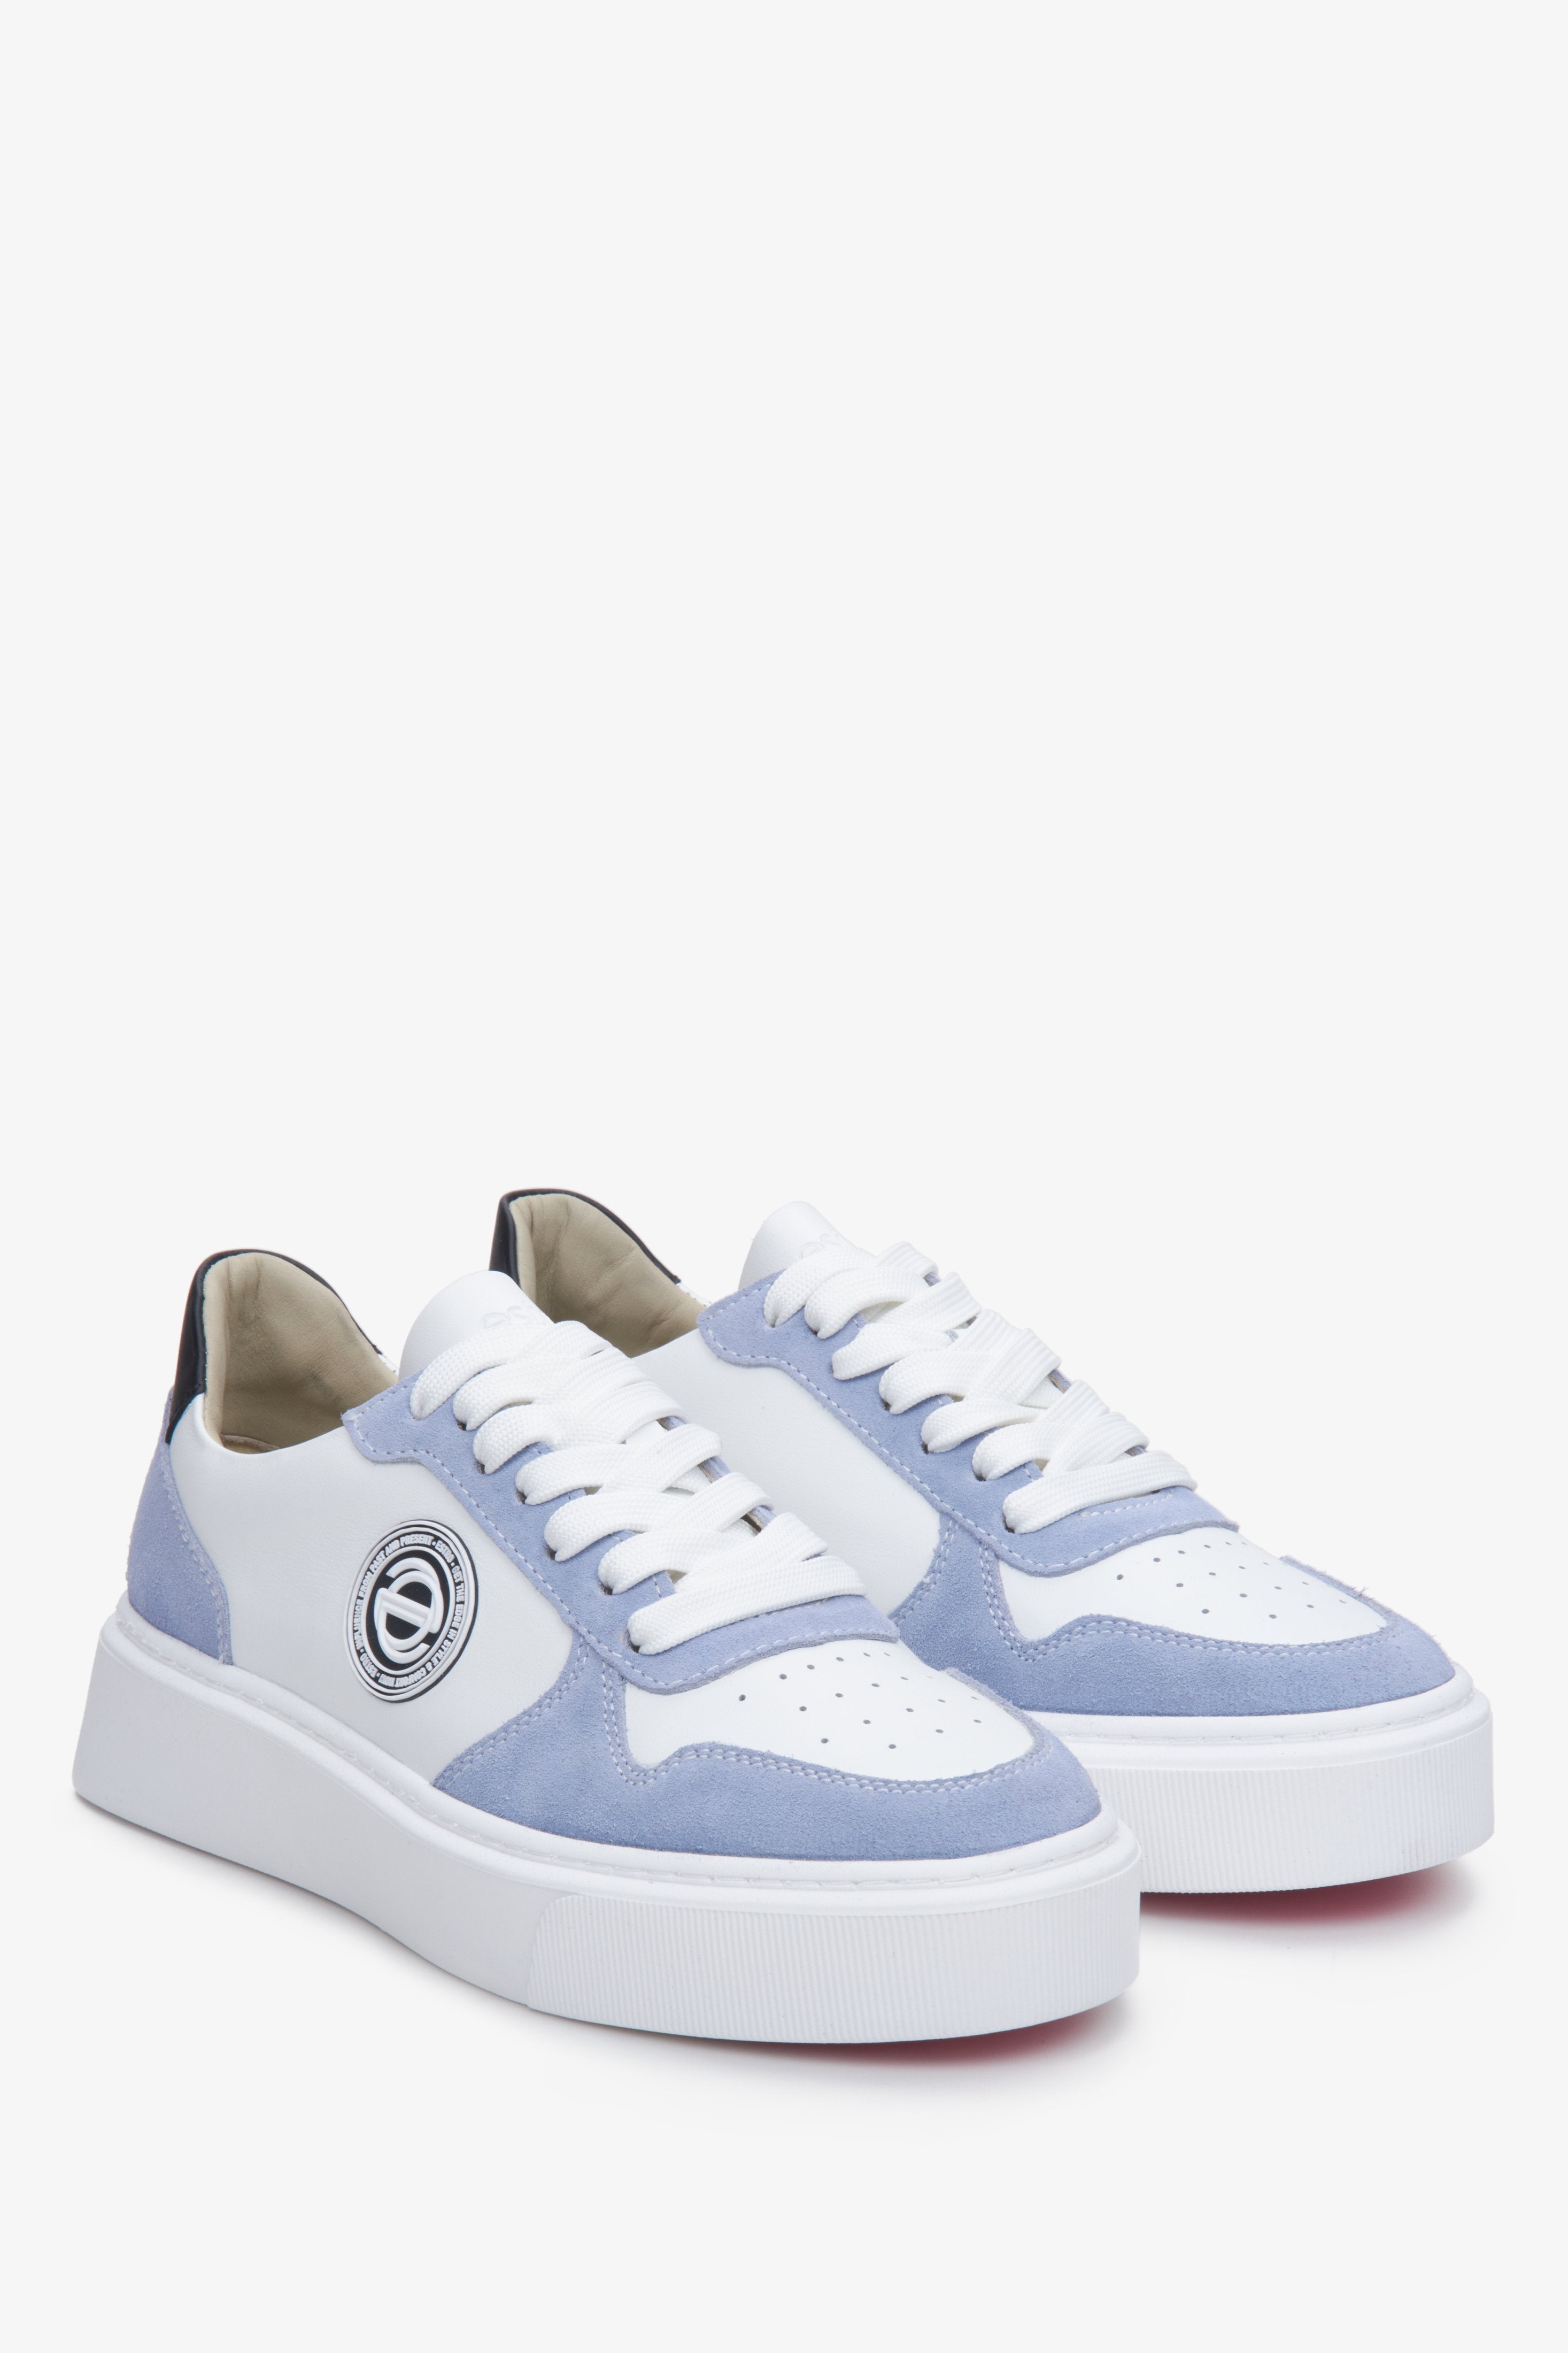 Sneakersy damskie z weluru i skóry naturalnej Estro ze sznurowaniem w kolorze biało-niebieskim.